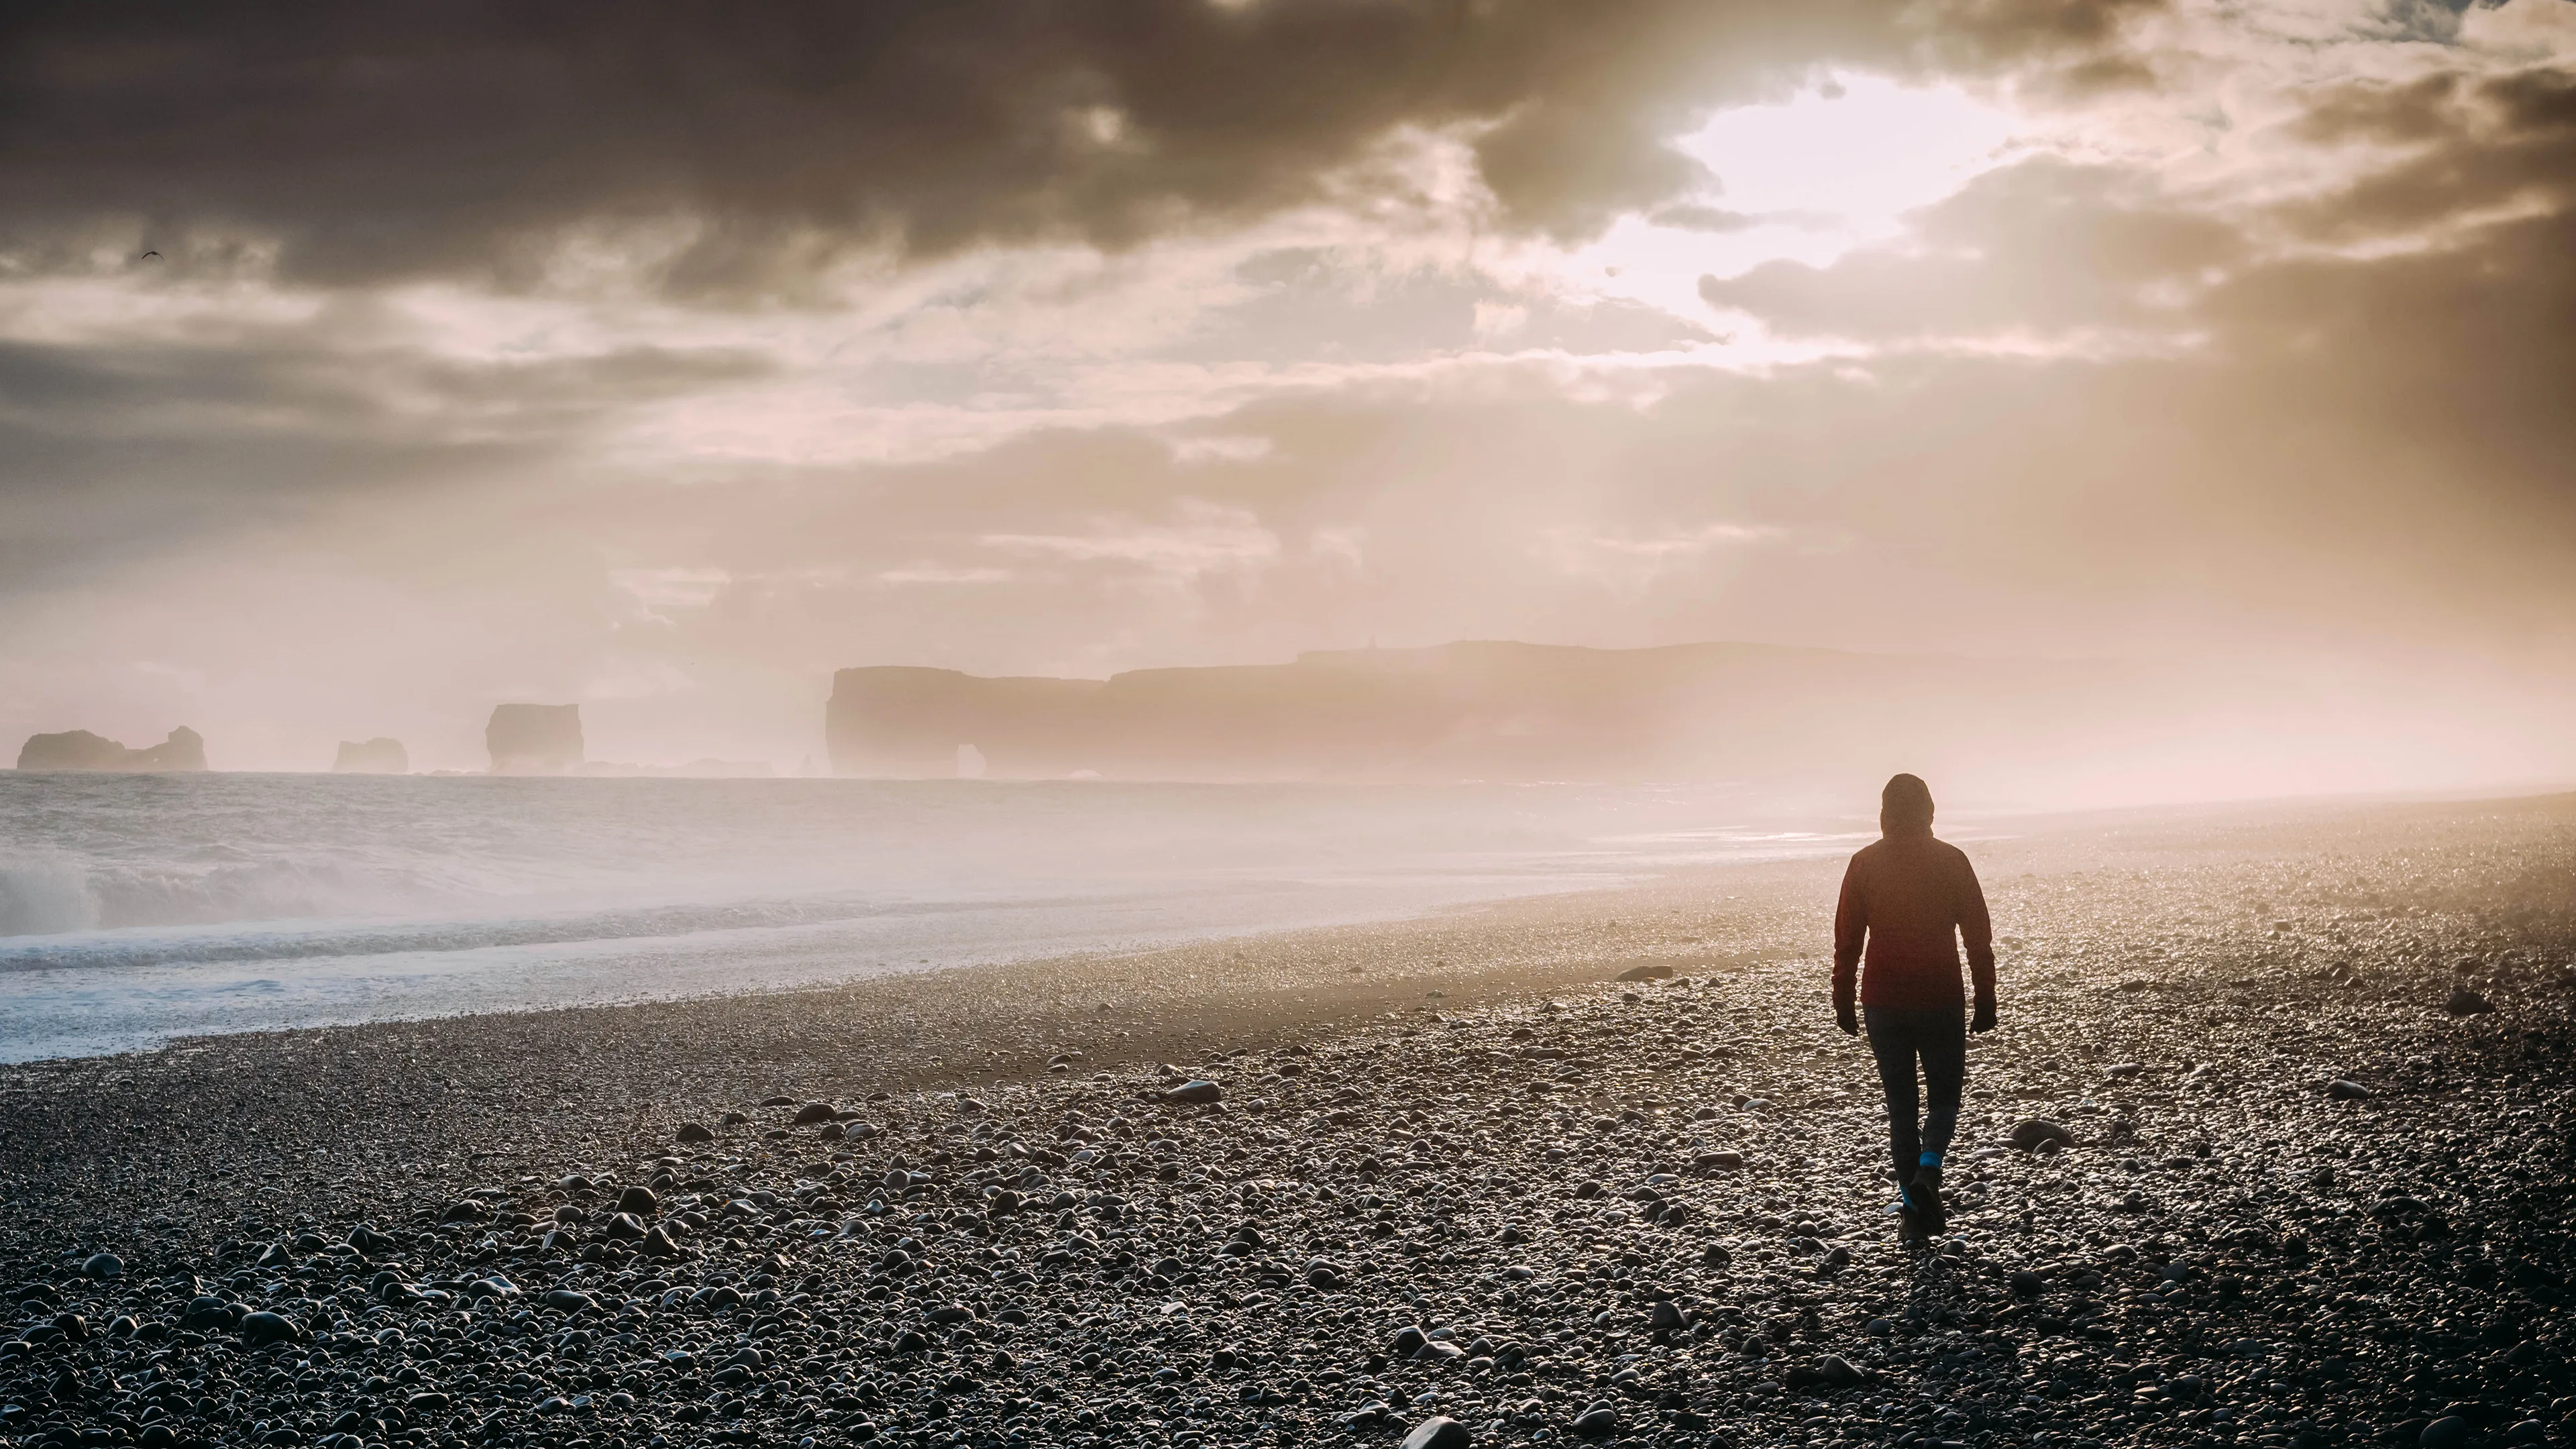 Person am Reynisfjara Strand auf Island, Nebel, Sonne bricht durch dunkle Wolkendecke, Felsenküste mit einzigartigen Formationen im Hintergrund